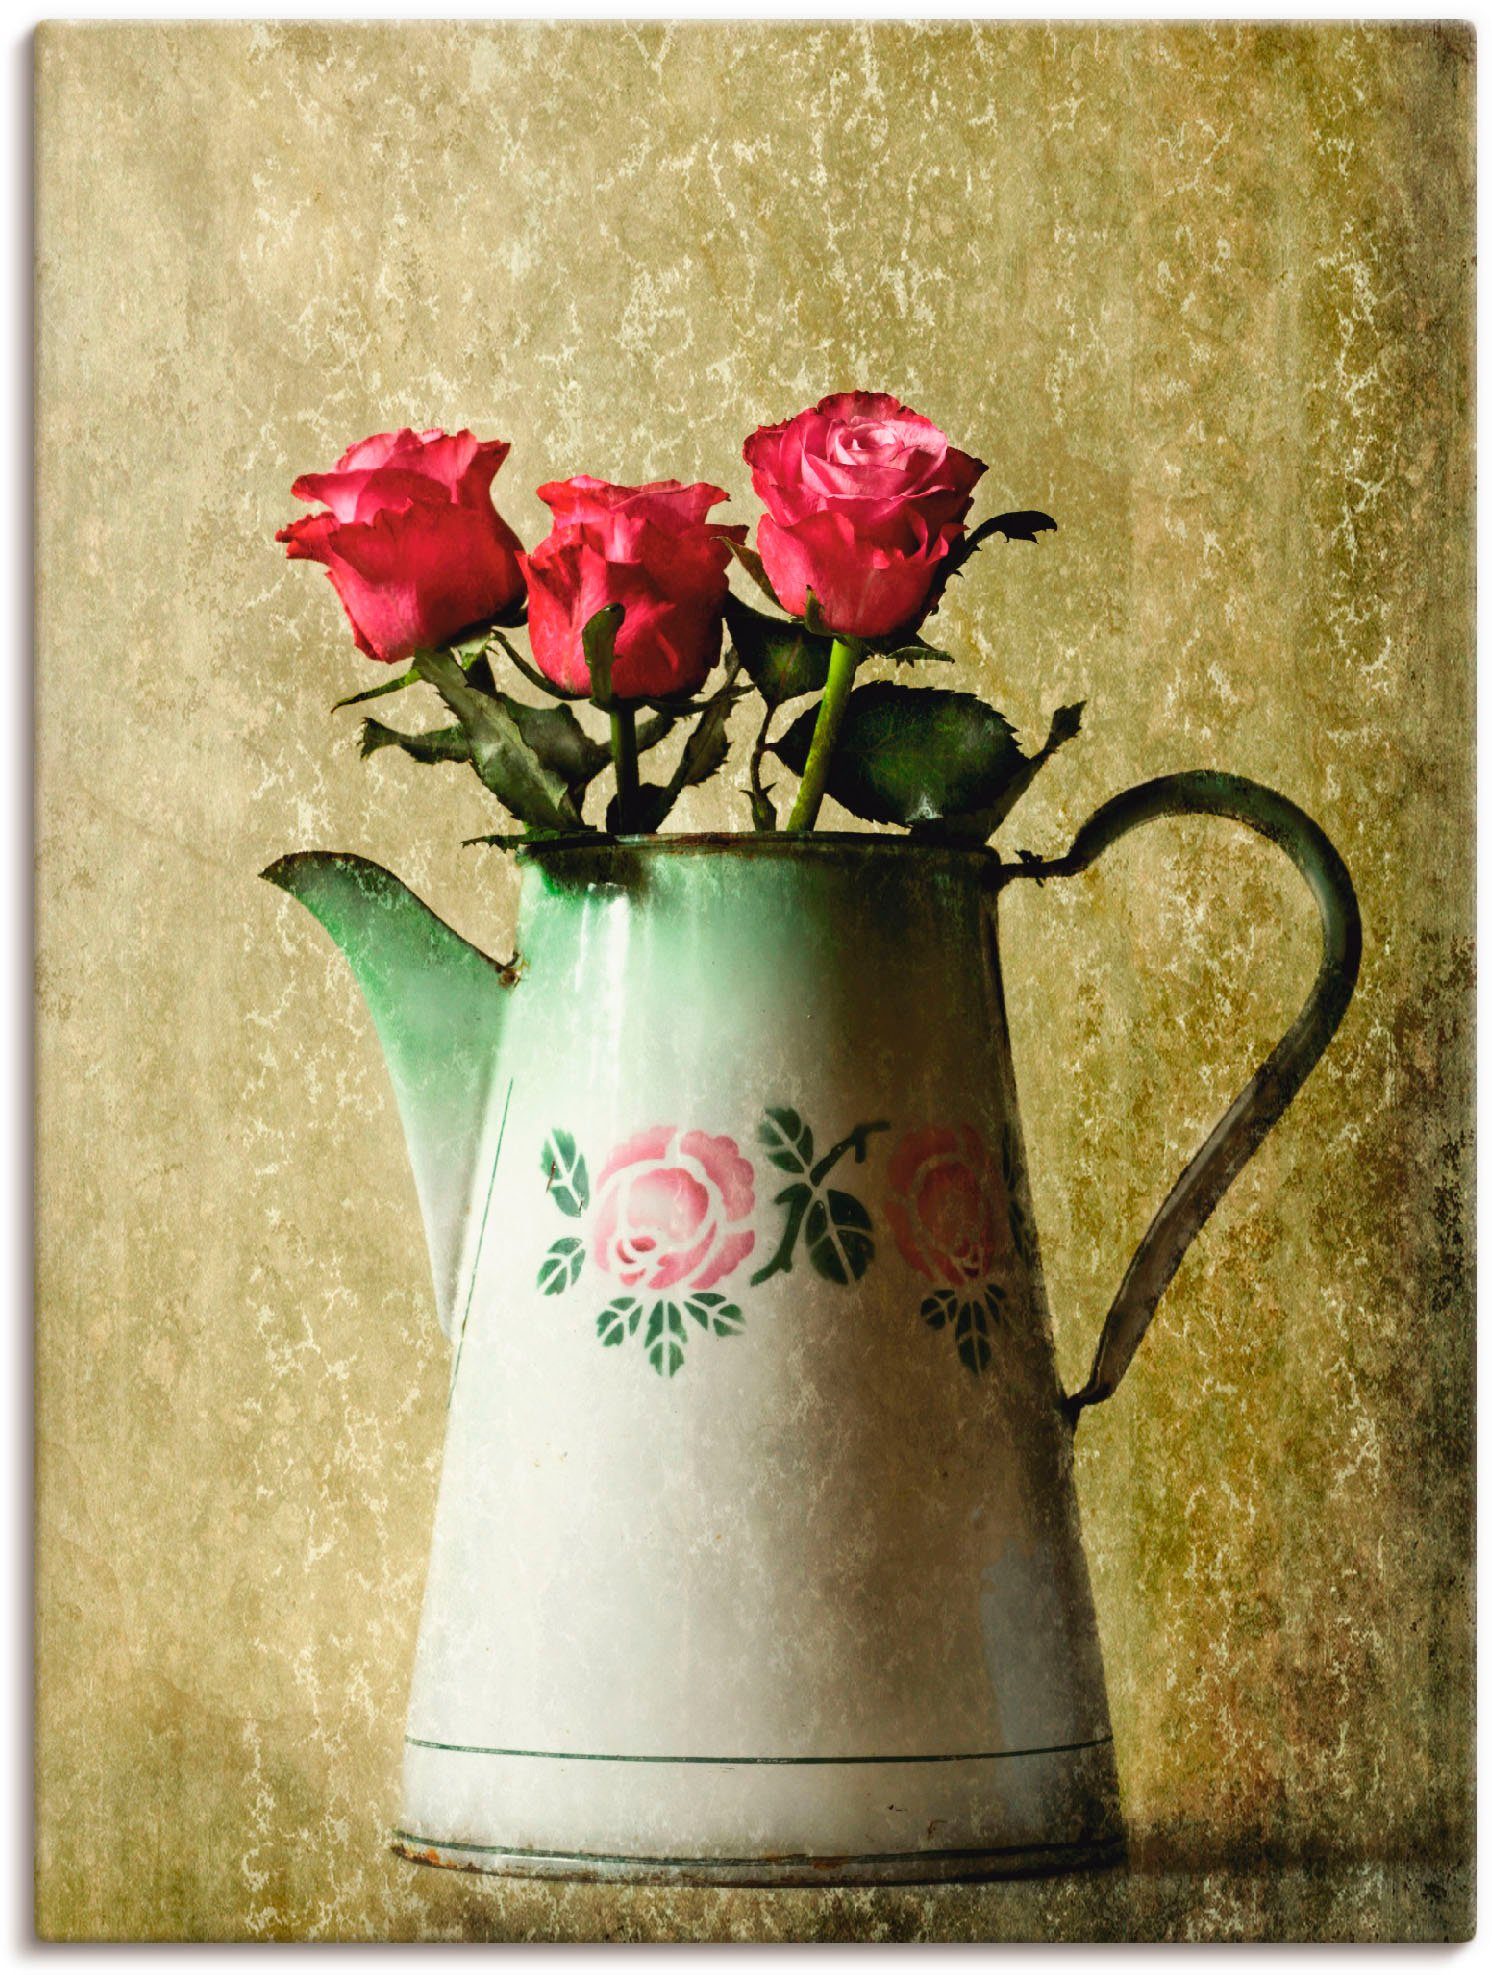 Artland Artprint Drie rozen in een oude kan in vele afmetingen & productsoorten -artprint op linnen, poster, muursticker / wandfolie ook geschikt voor de badkamer (1 stuk)